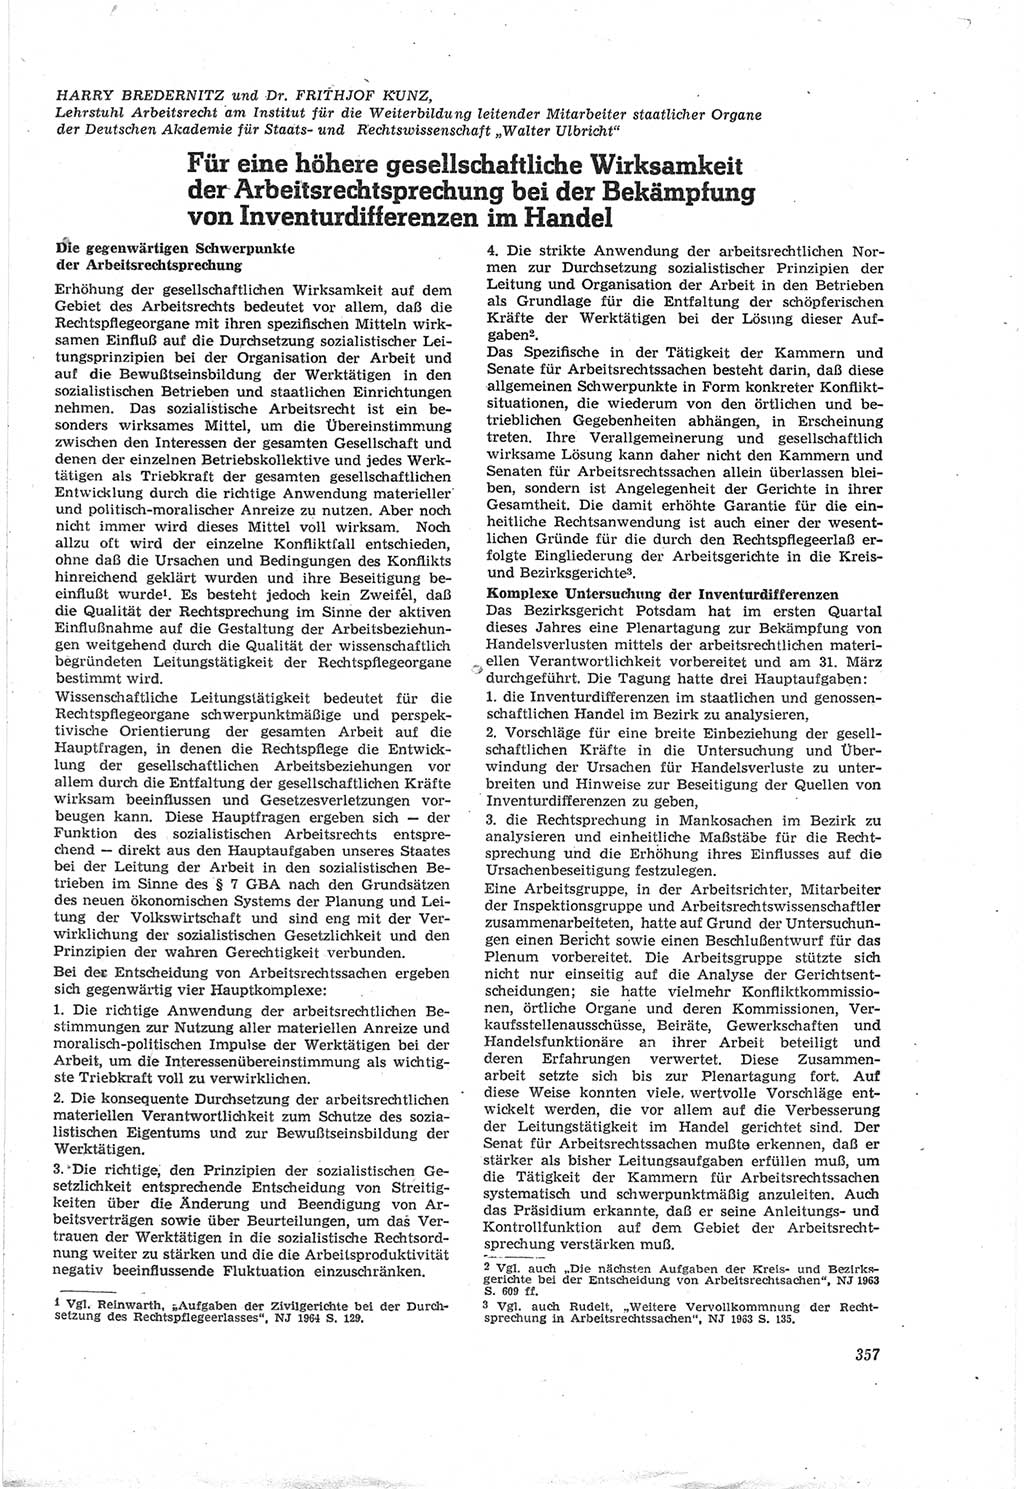 Neue Justiz (NJ), Zeitschrift für Recht und Rechtswissenschaft [Deutsche Demokratische Republik (DDR)], 18. Jahrgang 1964, Seite 357 (NJ DDR 1964, S. 357)